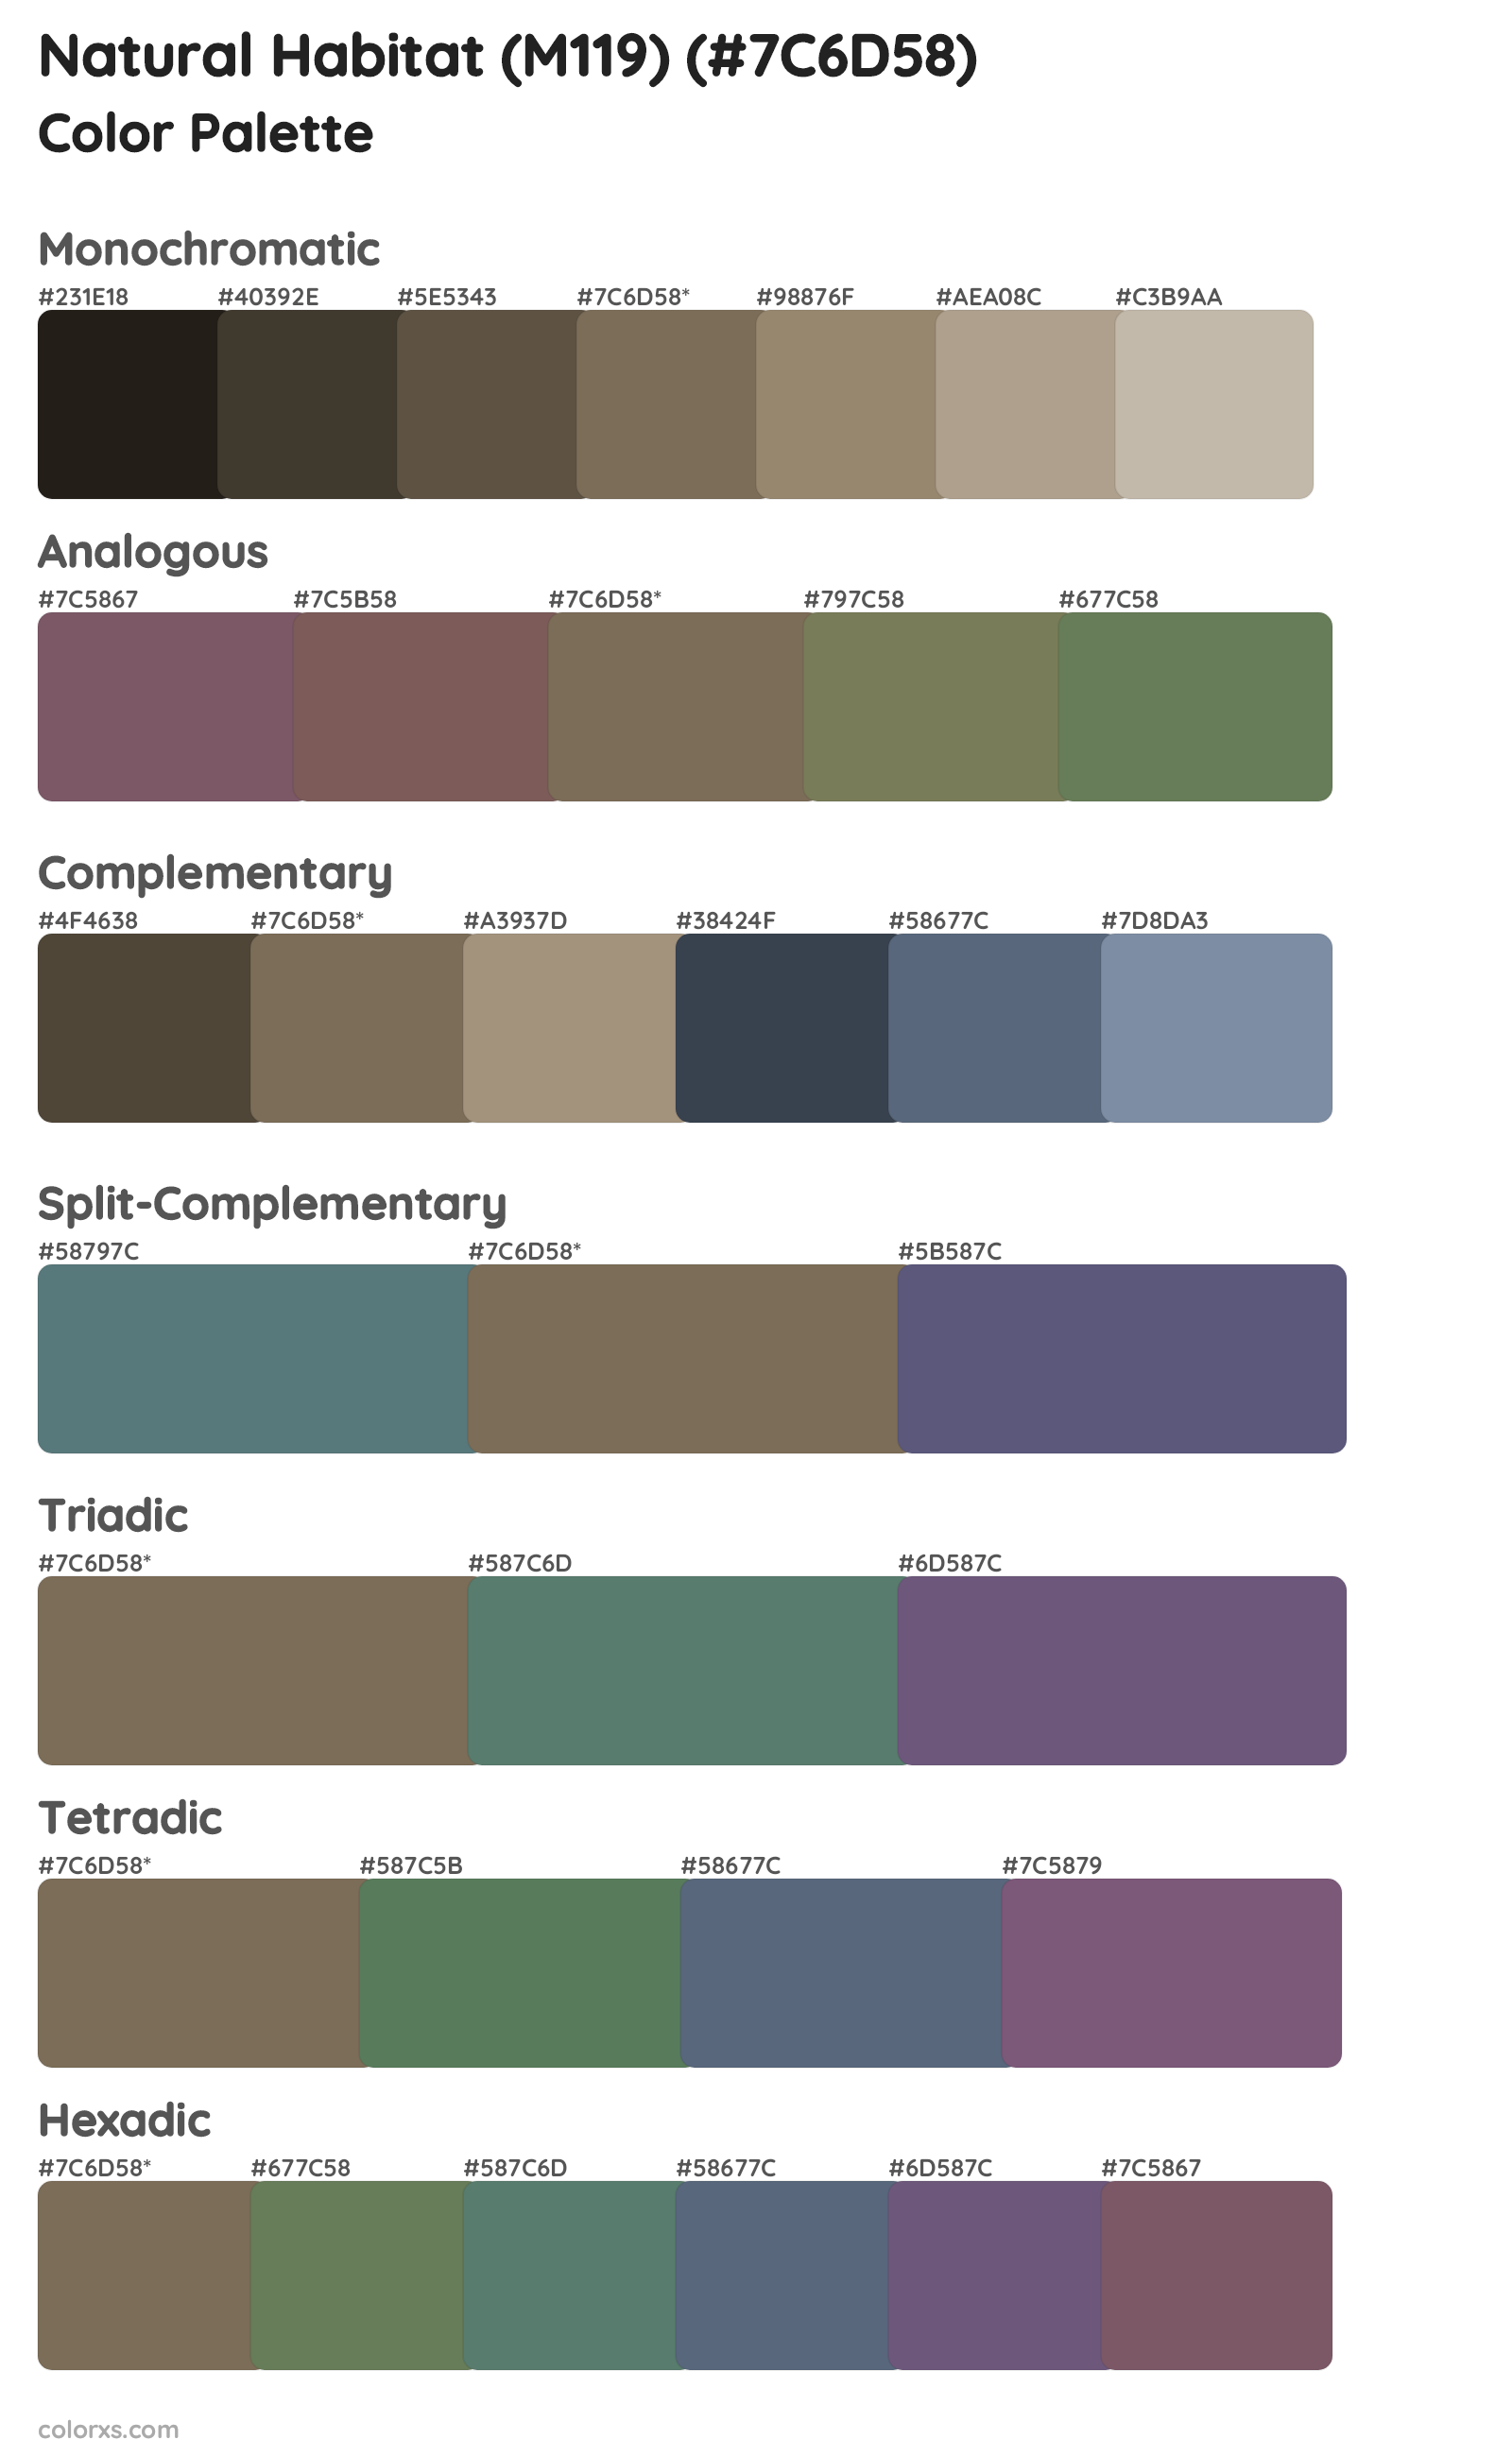 Natural Habitat (M119) Color Scheme Palettes